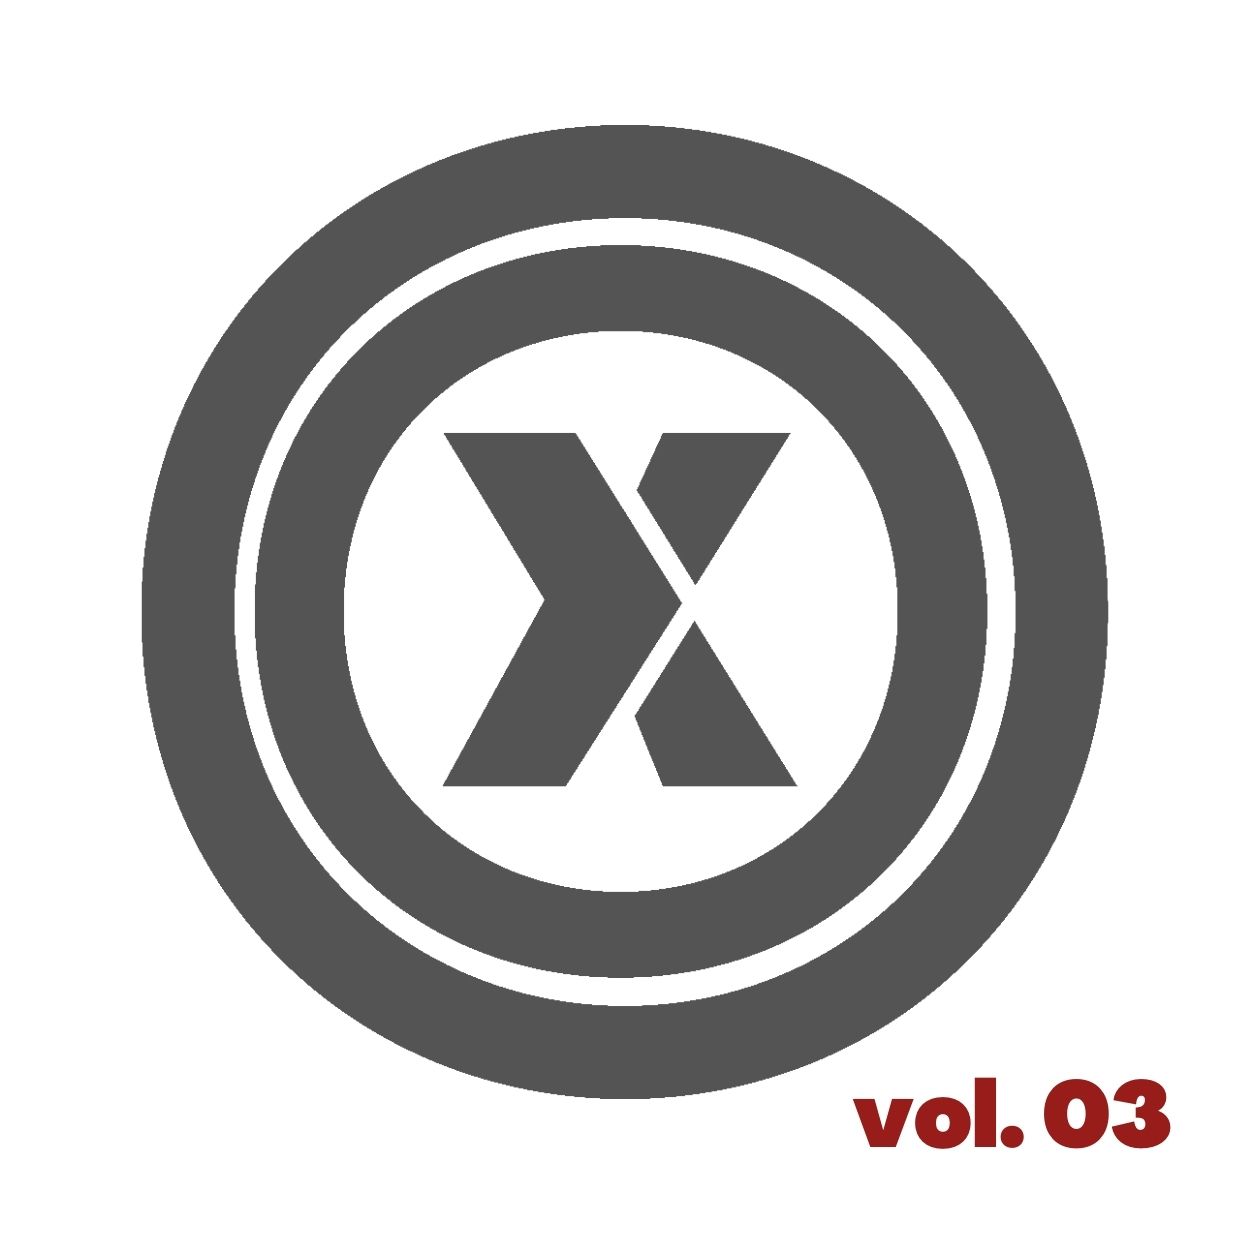 OXO Vol. 03